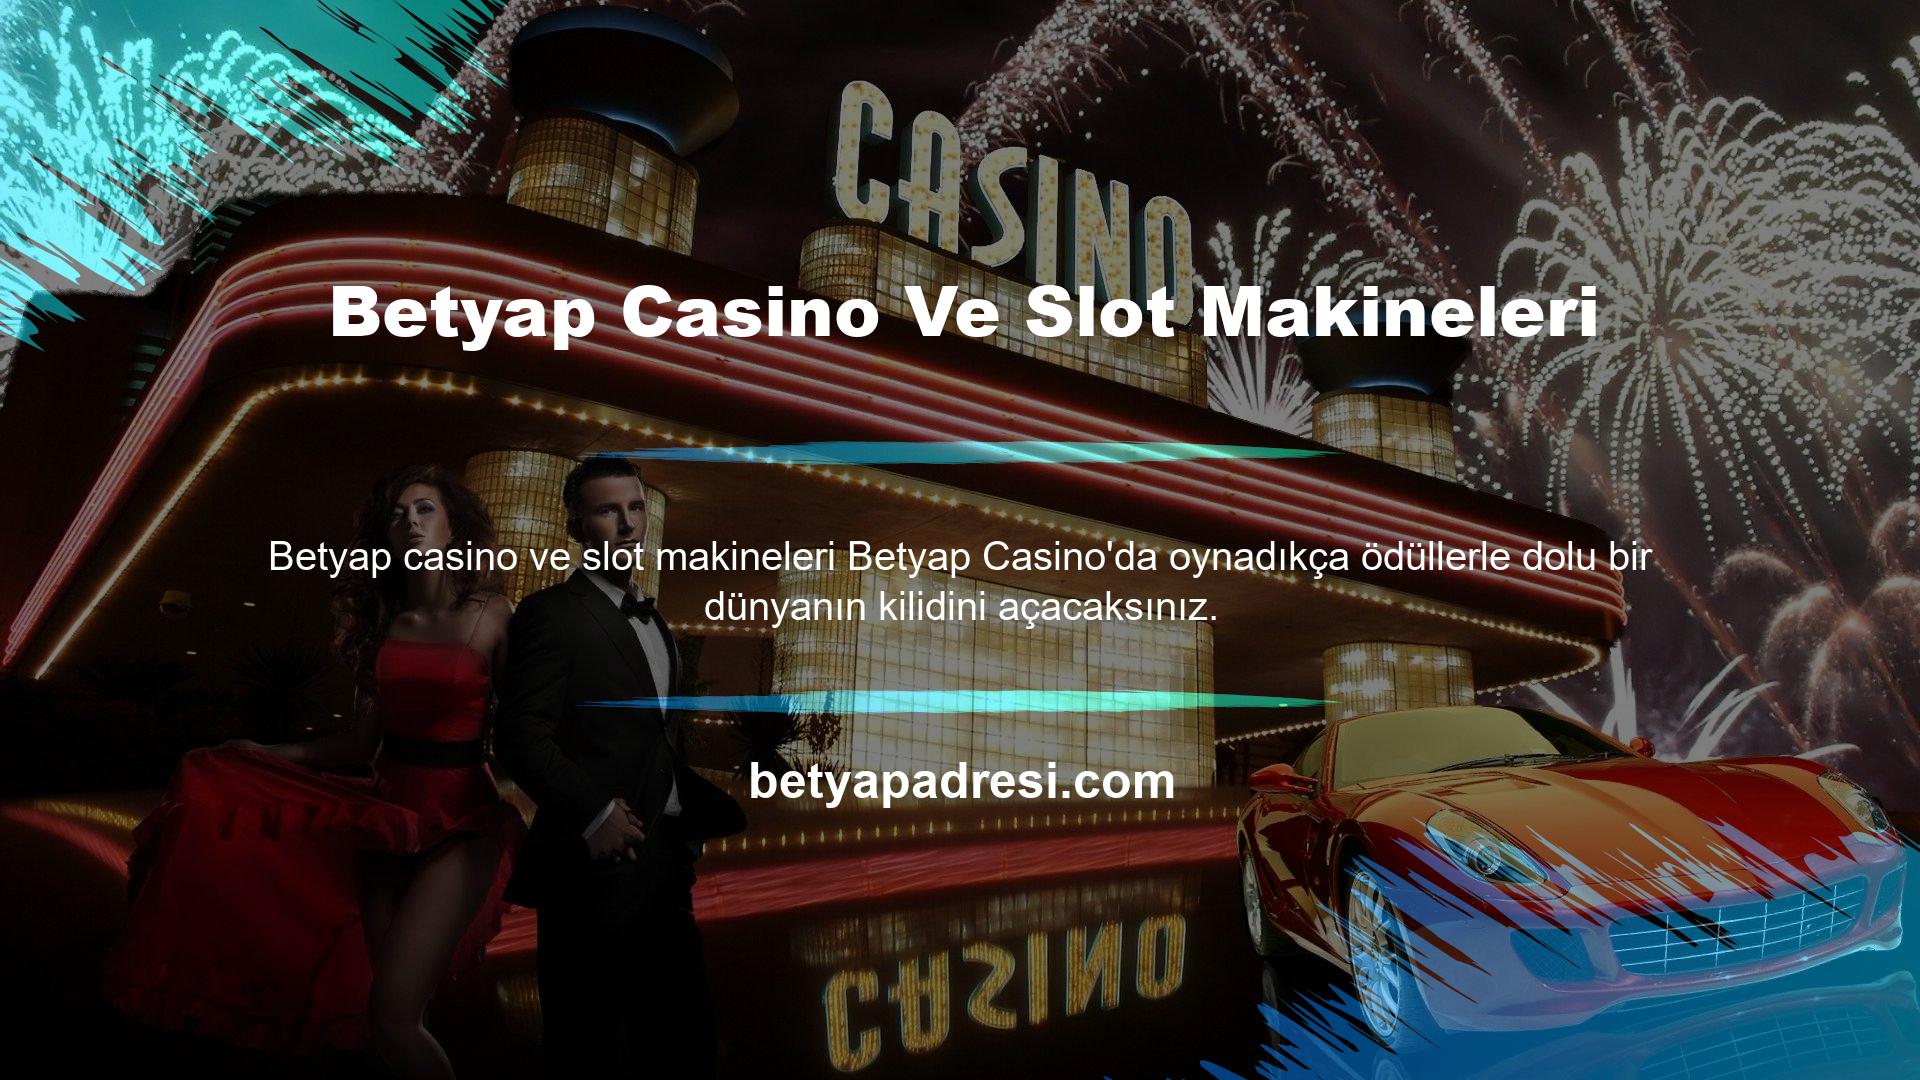 Betyap Casino sayesinde eğlence dünyasına adım attığınızda casino eğlence heyecanı ile harikalar dünyasına adım atmış oluyorsunuz